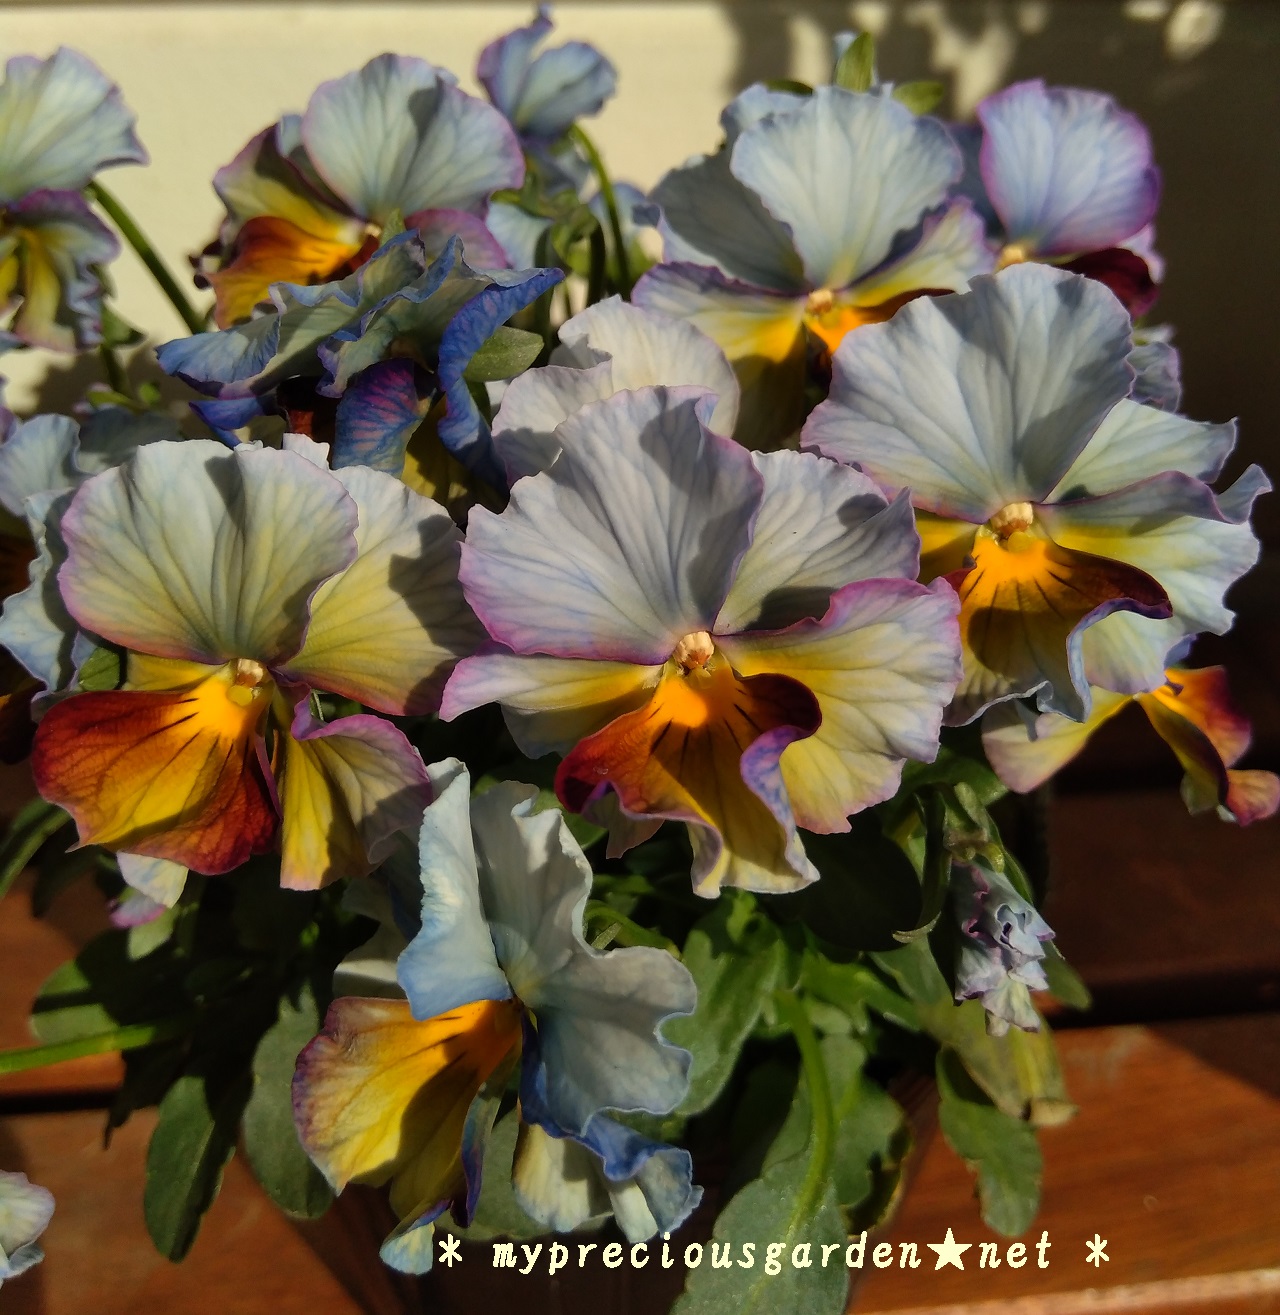 冬の青花 秋 春にかけて咲く青色 水色の花 My Precious Garden 大好きな植物とすごす マイプレシャスガーデン